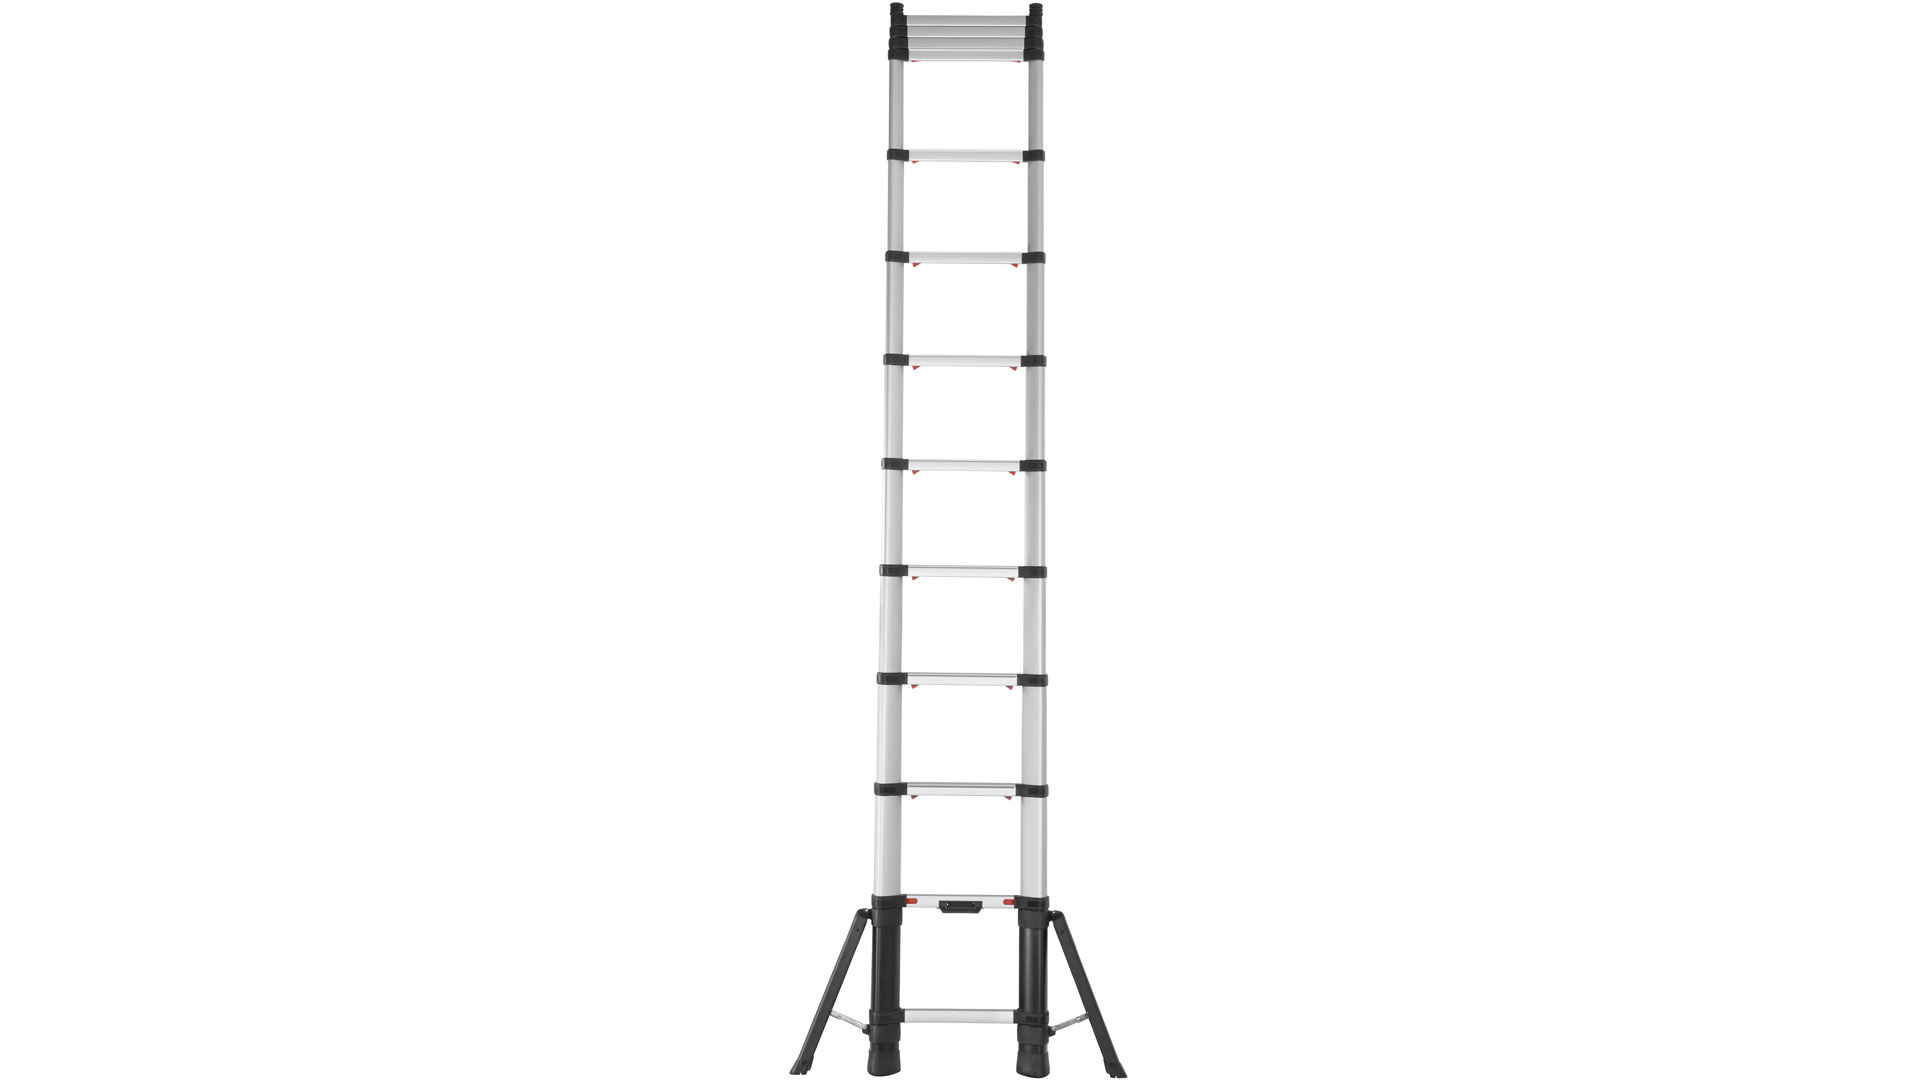 Teleskop-Sprossenanlegeleiter, 13 Sprossen, Leiterlänge max. 4090 mm, Leiterlänge zusammengeschoben 930 mm, Gewicht 17,4 kg